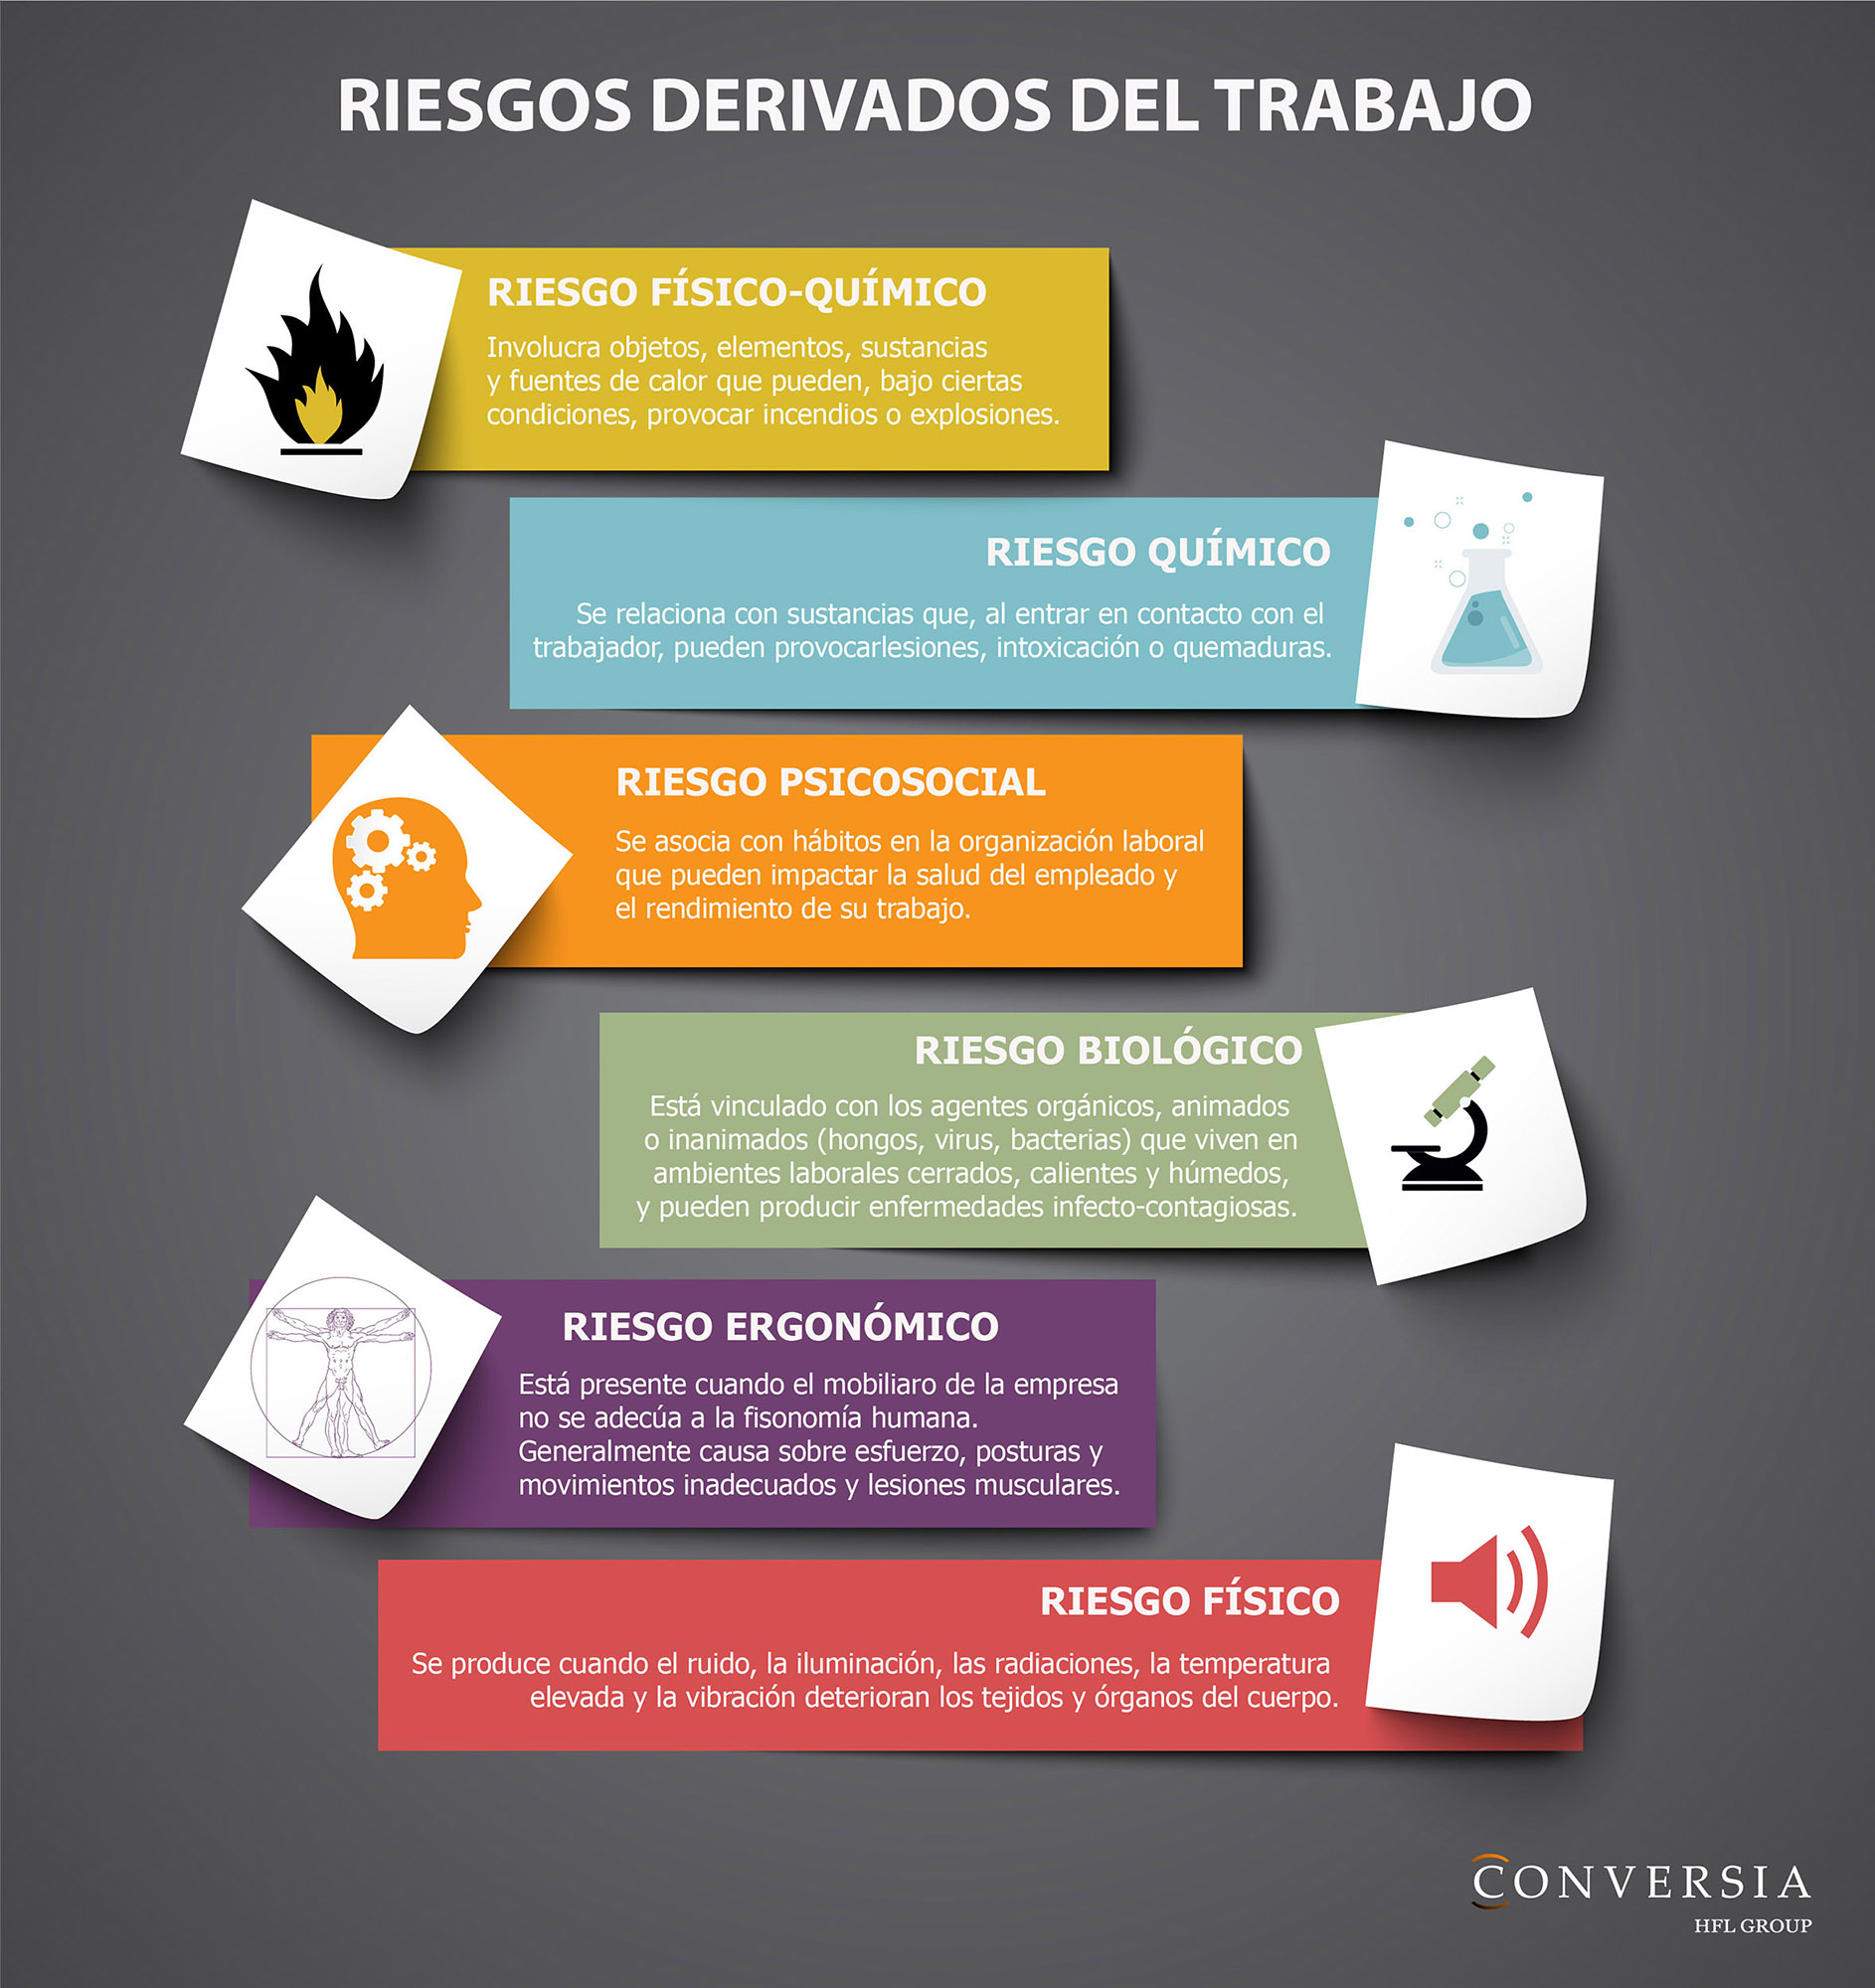 Alegre Cordelia hoy Infografía: Los riesgos derivados del trabajo | Conversia